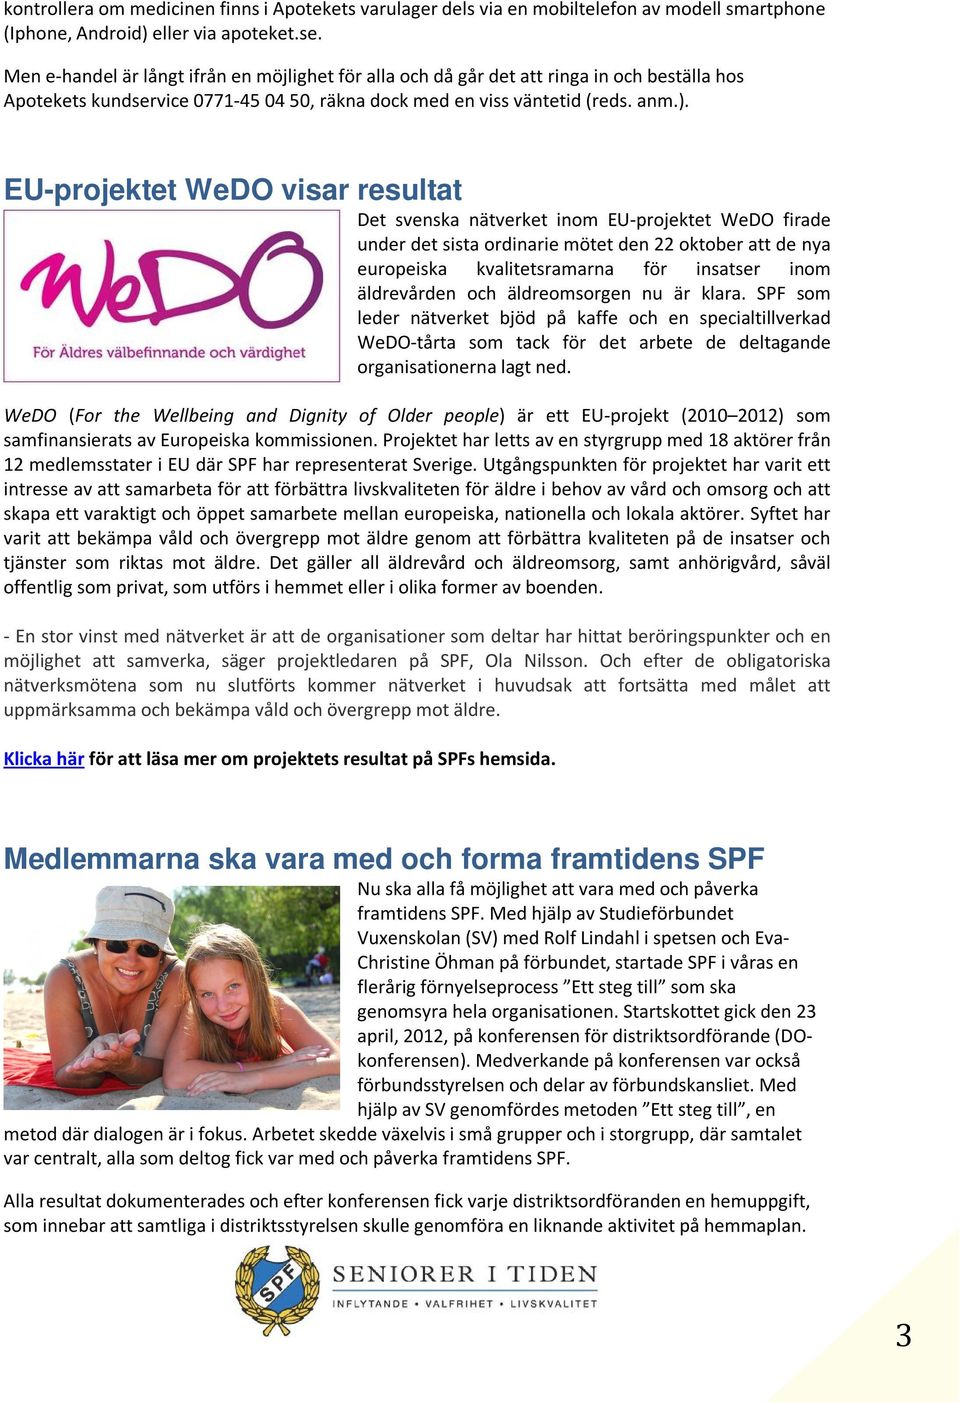 EU-projektet WeDO visar resultat Det svenska nätverket inom EU-projektet WeDO firade under det sista ordinarie mötet den 22 oktober att de nya europeiska kvalitetsramarna för insatser inom